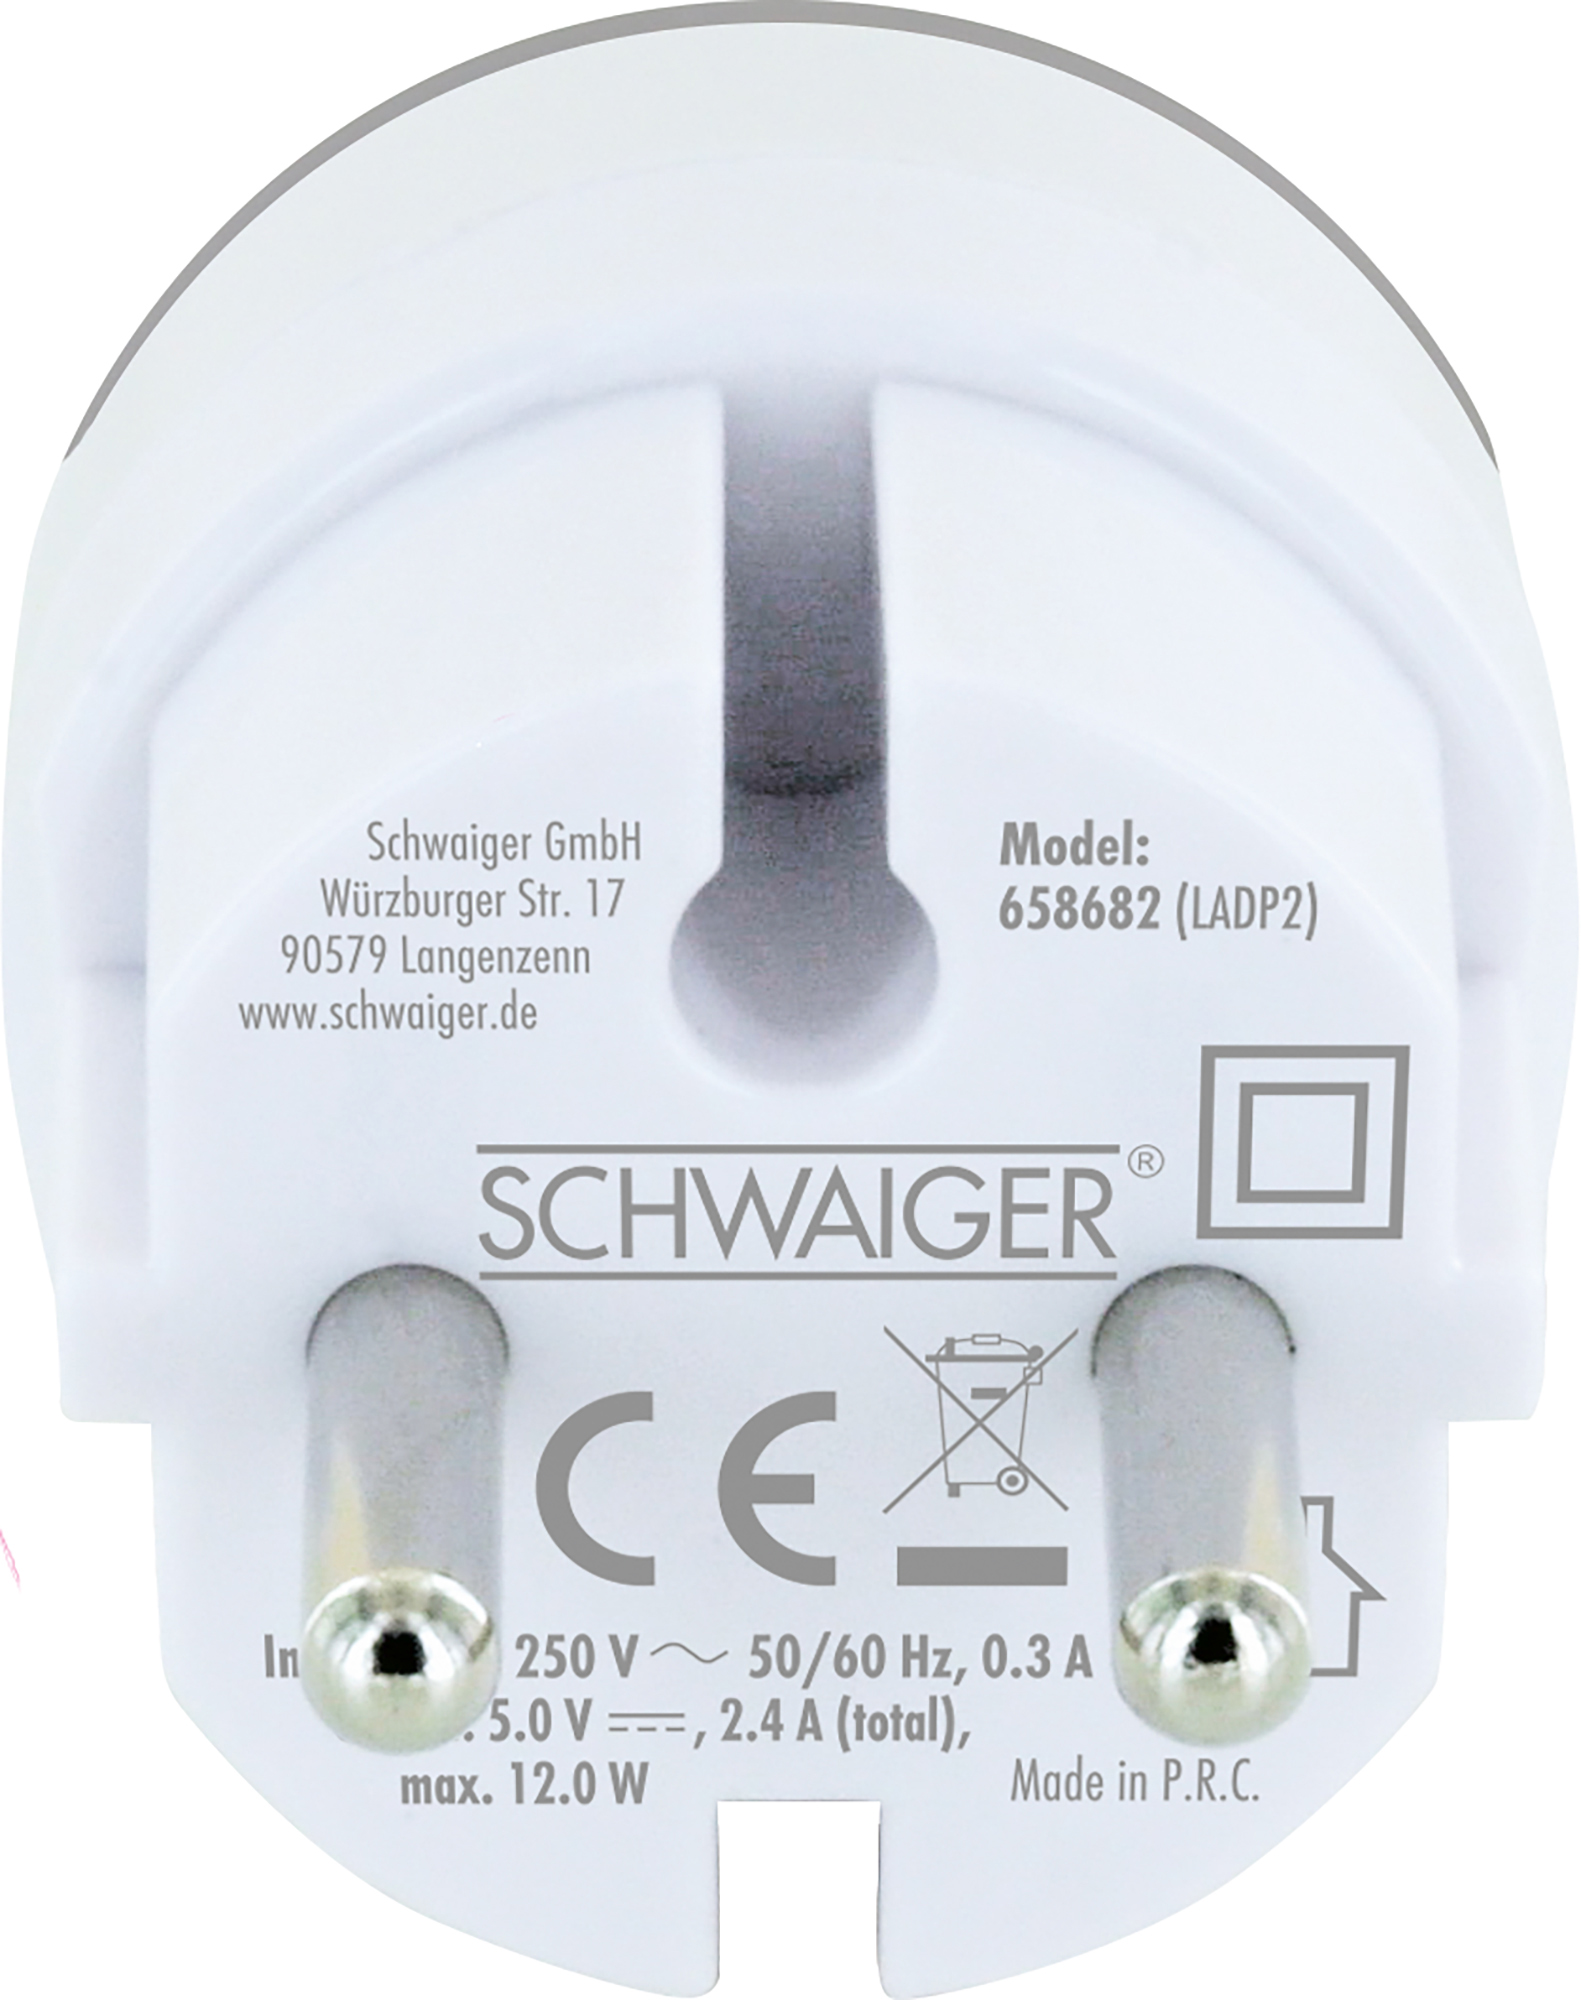 SCHWAIGER -658682- Ladeadapter